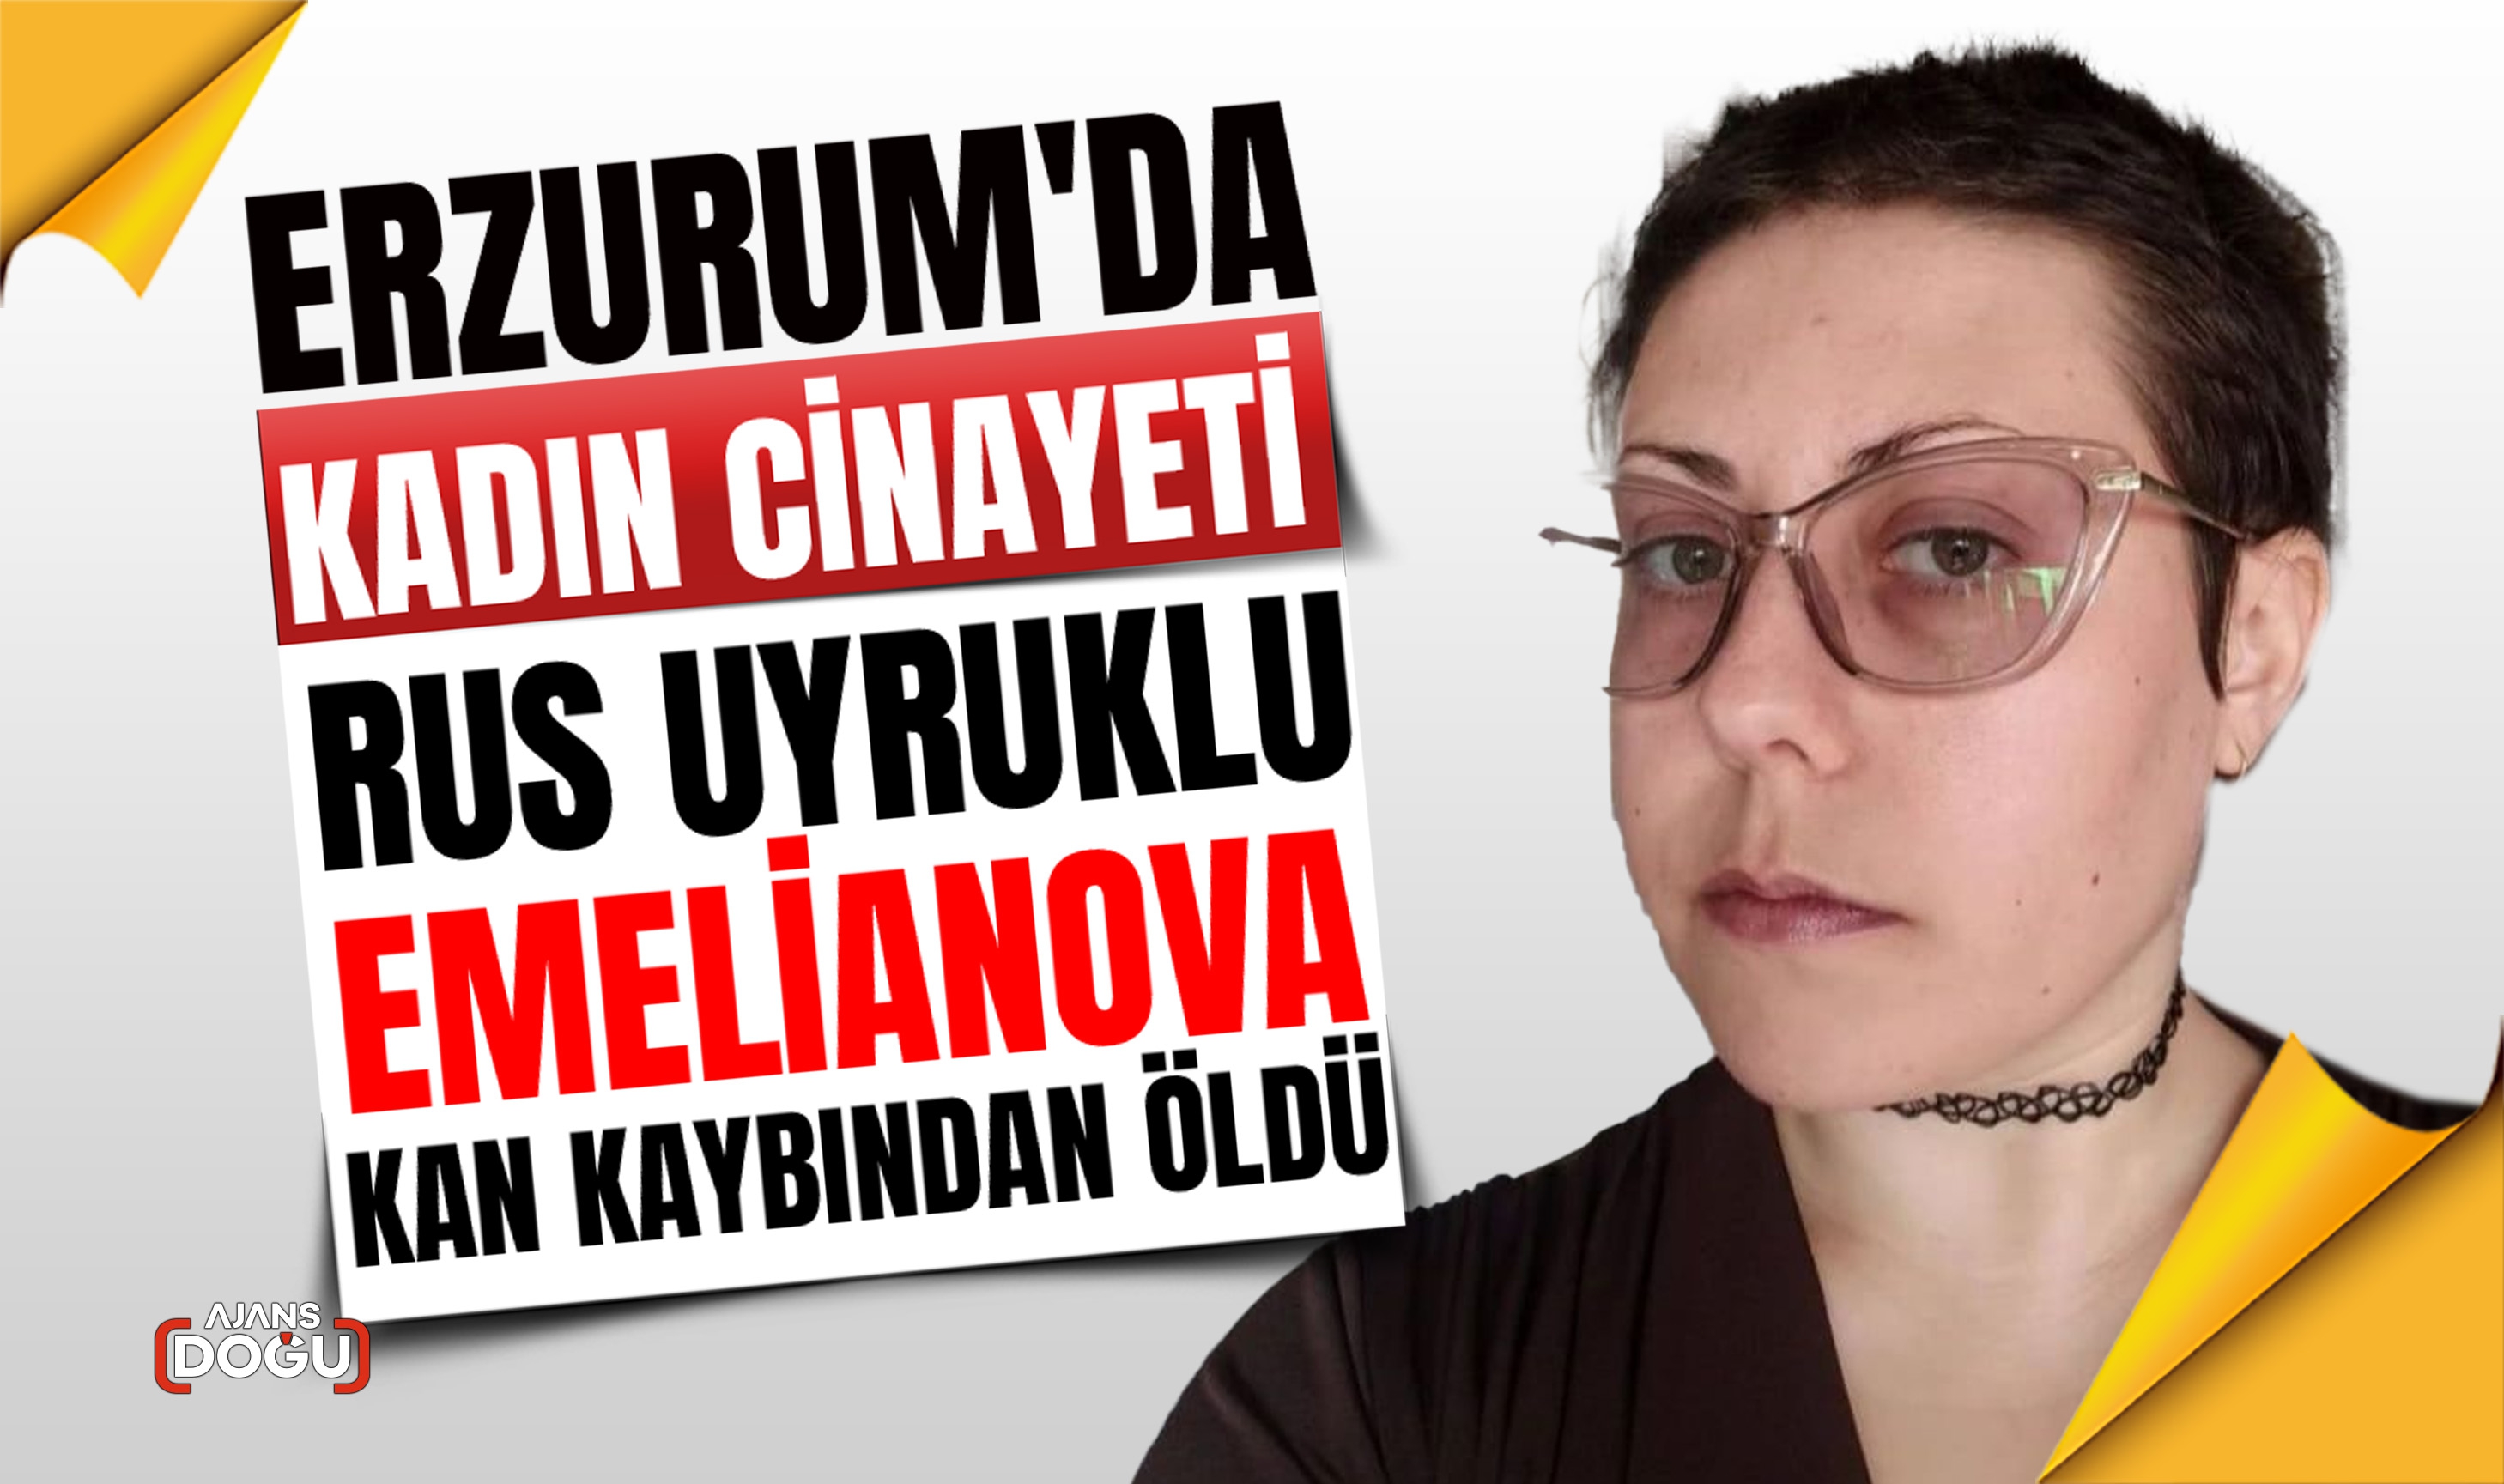 Erzurum'da kadın cinayeti... Rus uyruklu Emelianova kan kaybından öldü